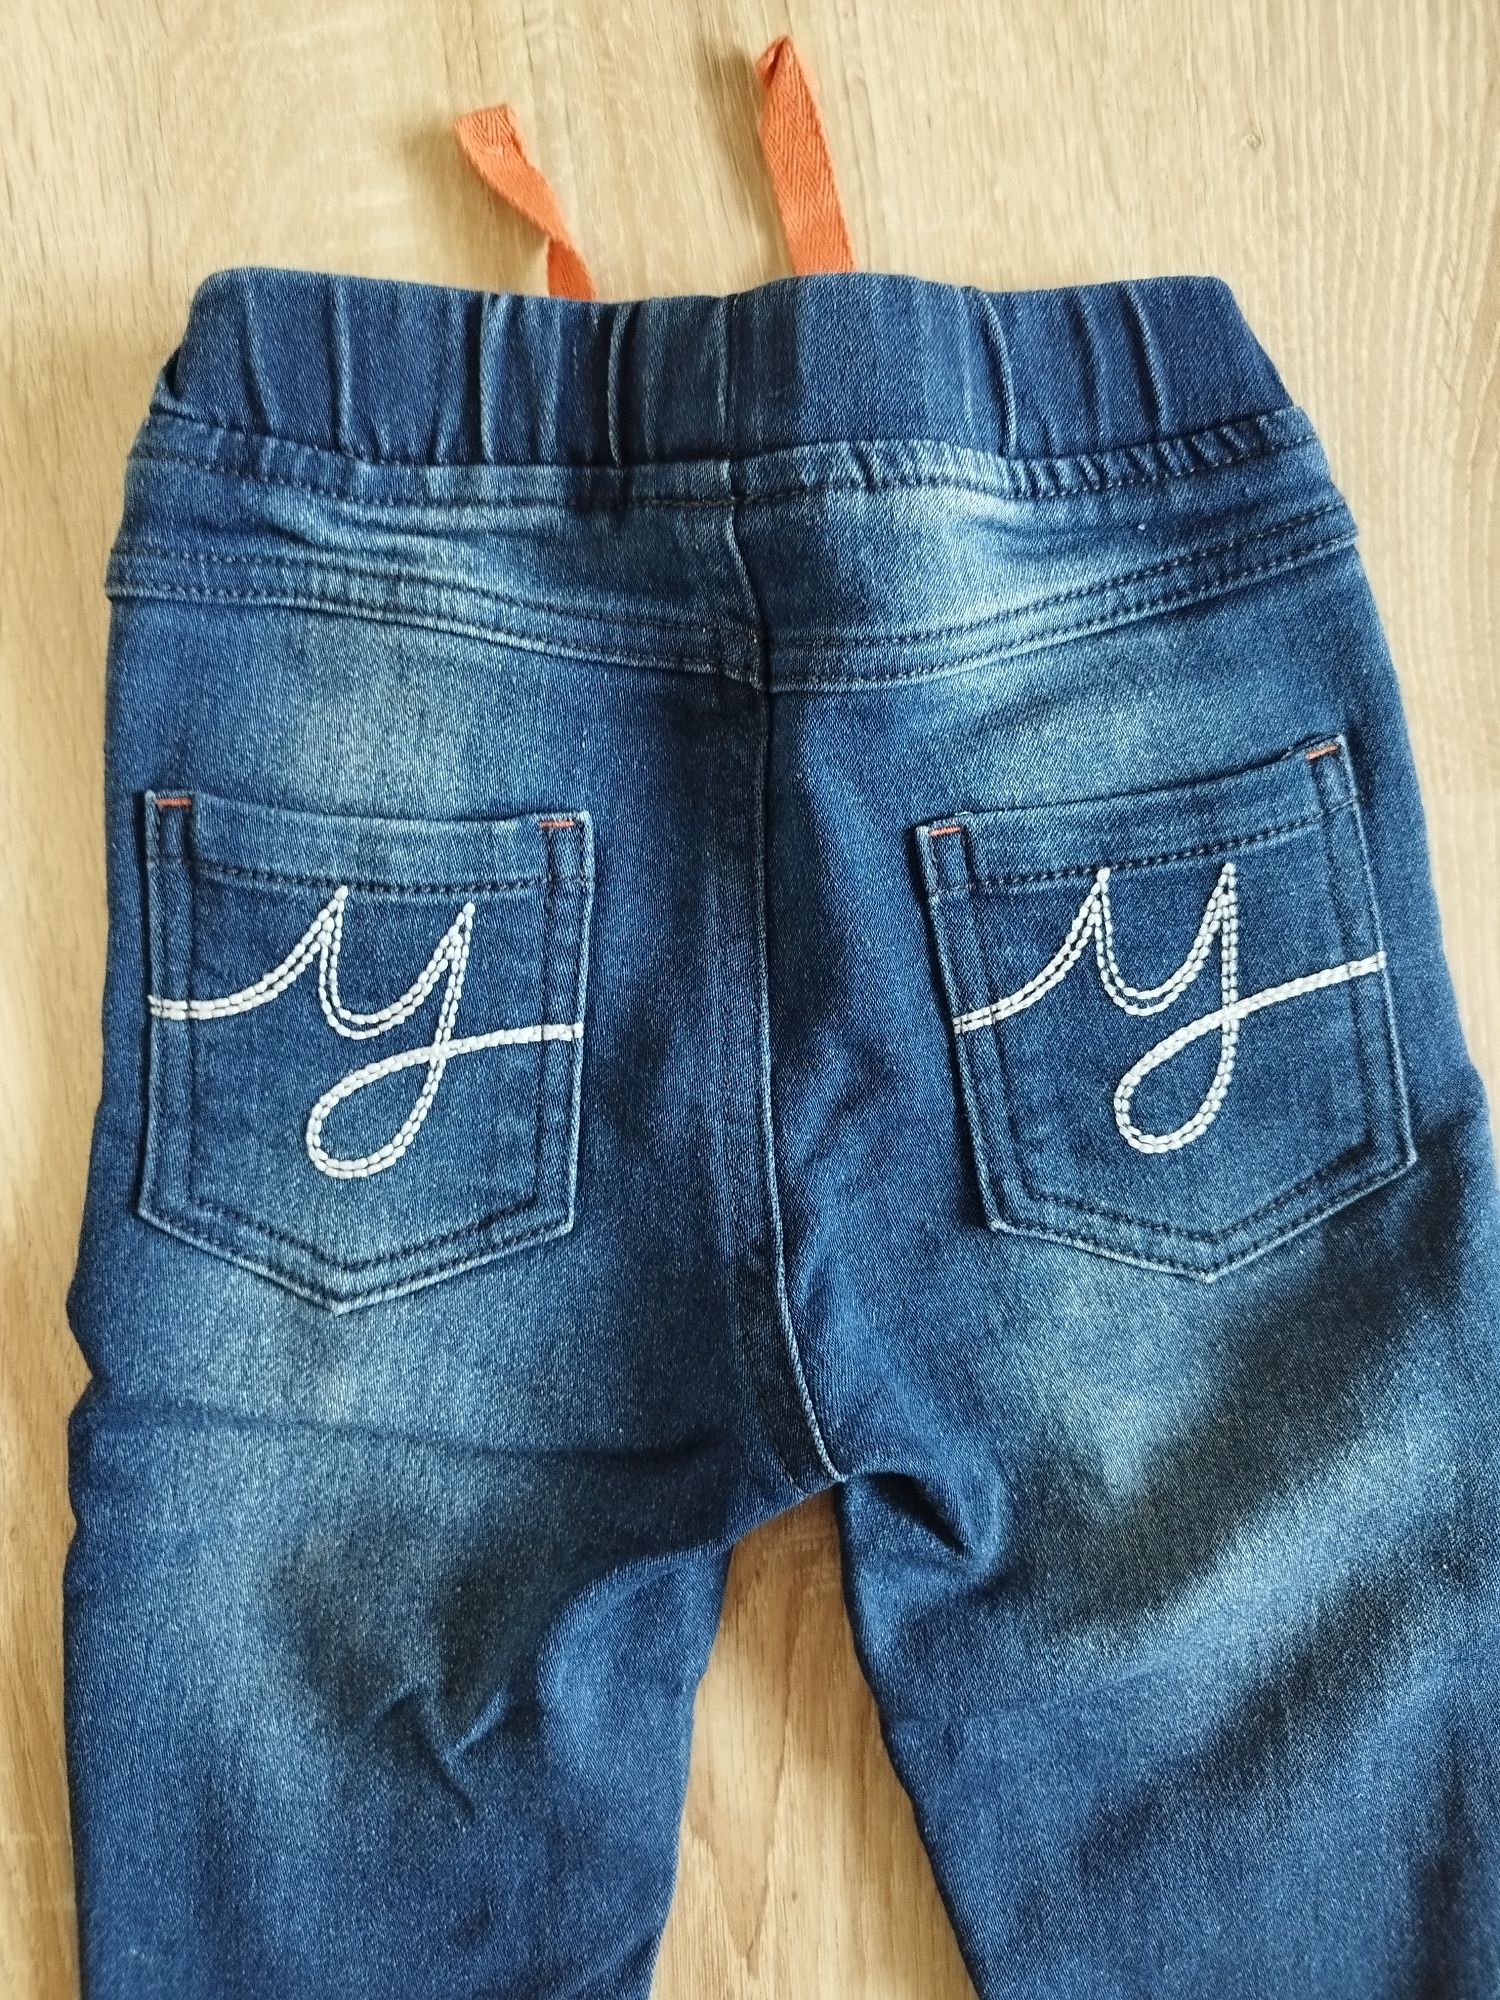 Spodnie jeansowe dla chłopca, napisy R.74/80